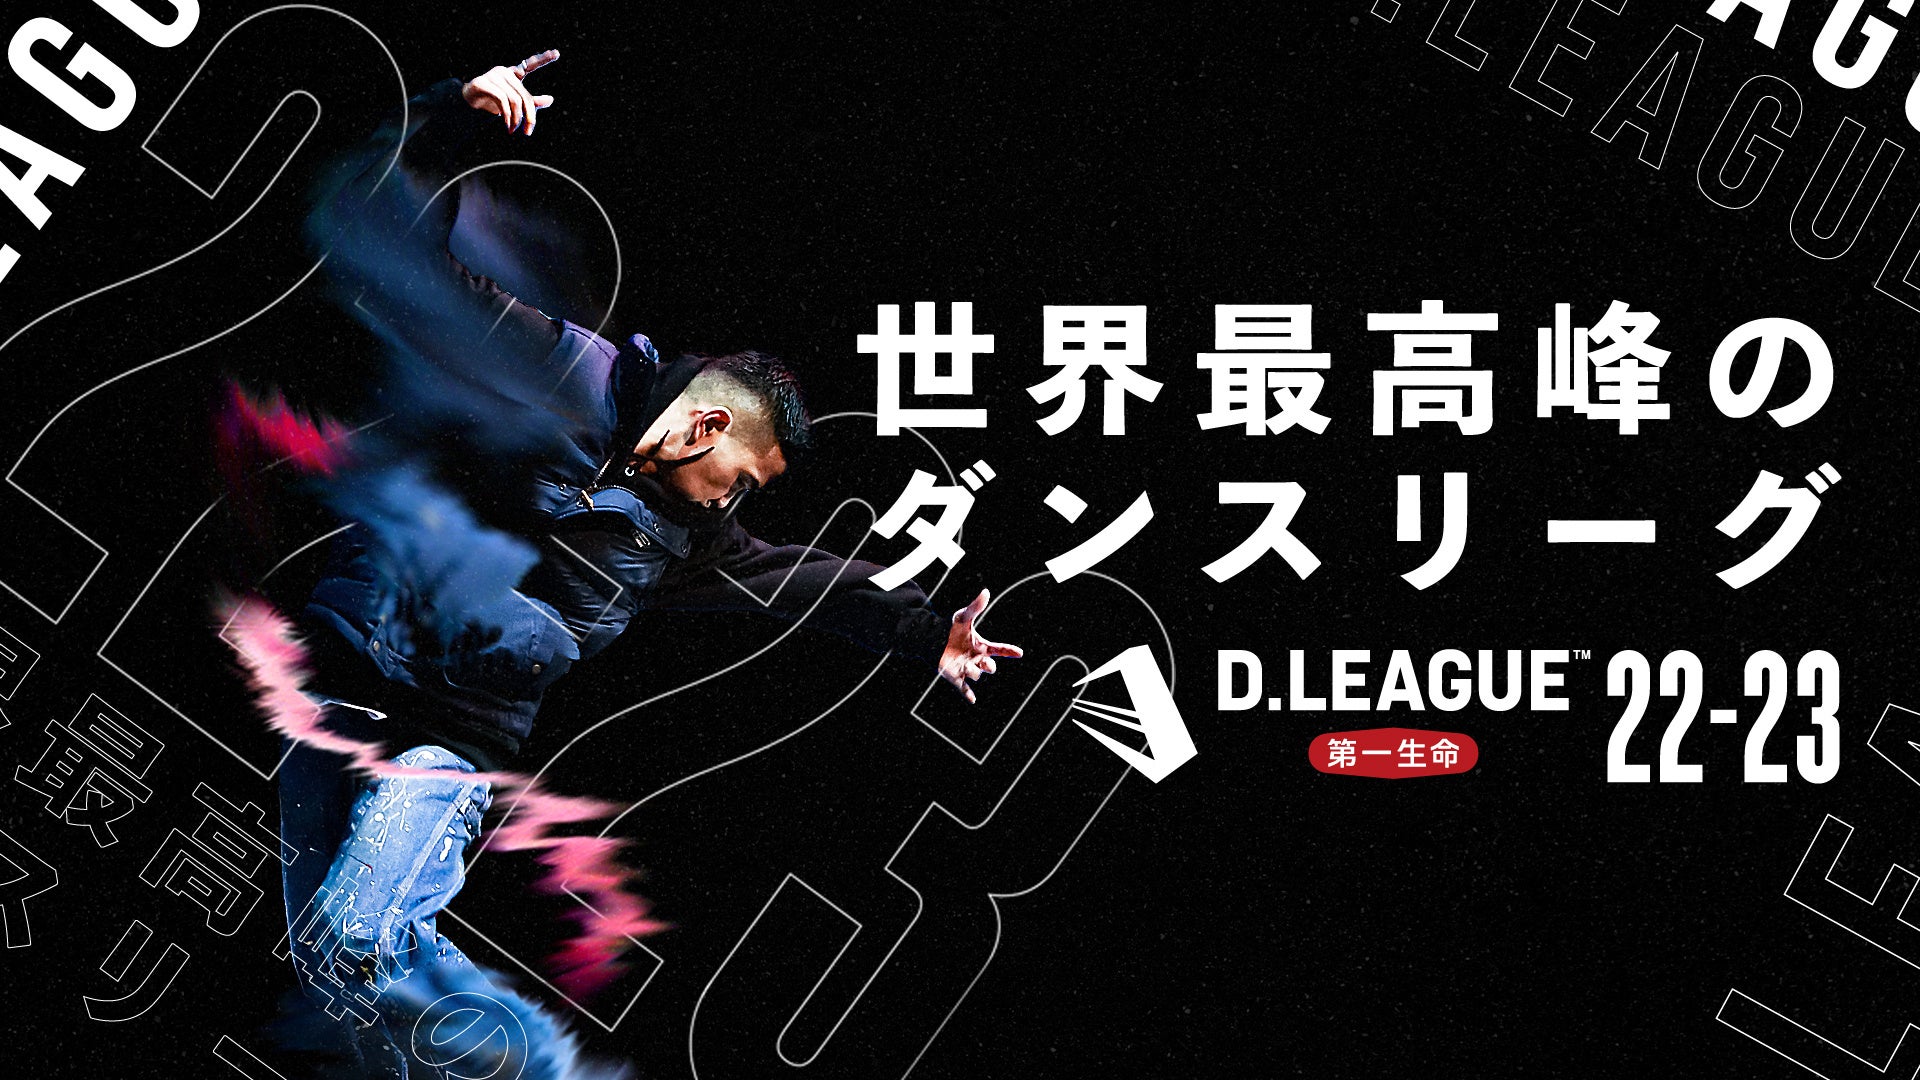 日本発プロダンスリーグ【第一生命 D.LEAGUE 22-23】3度目のシーズンとなる今回もダンスチャンネルで生放送決定！！